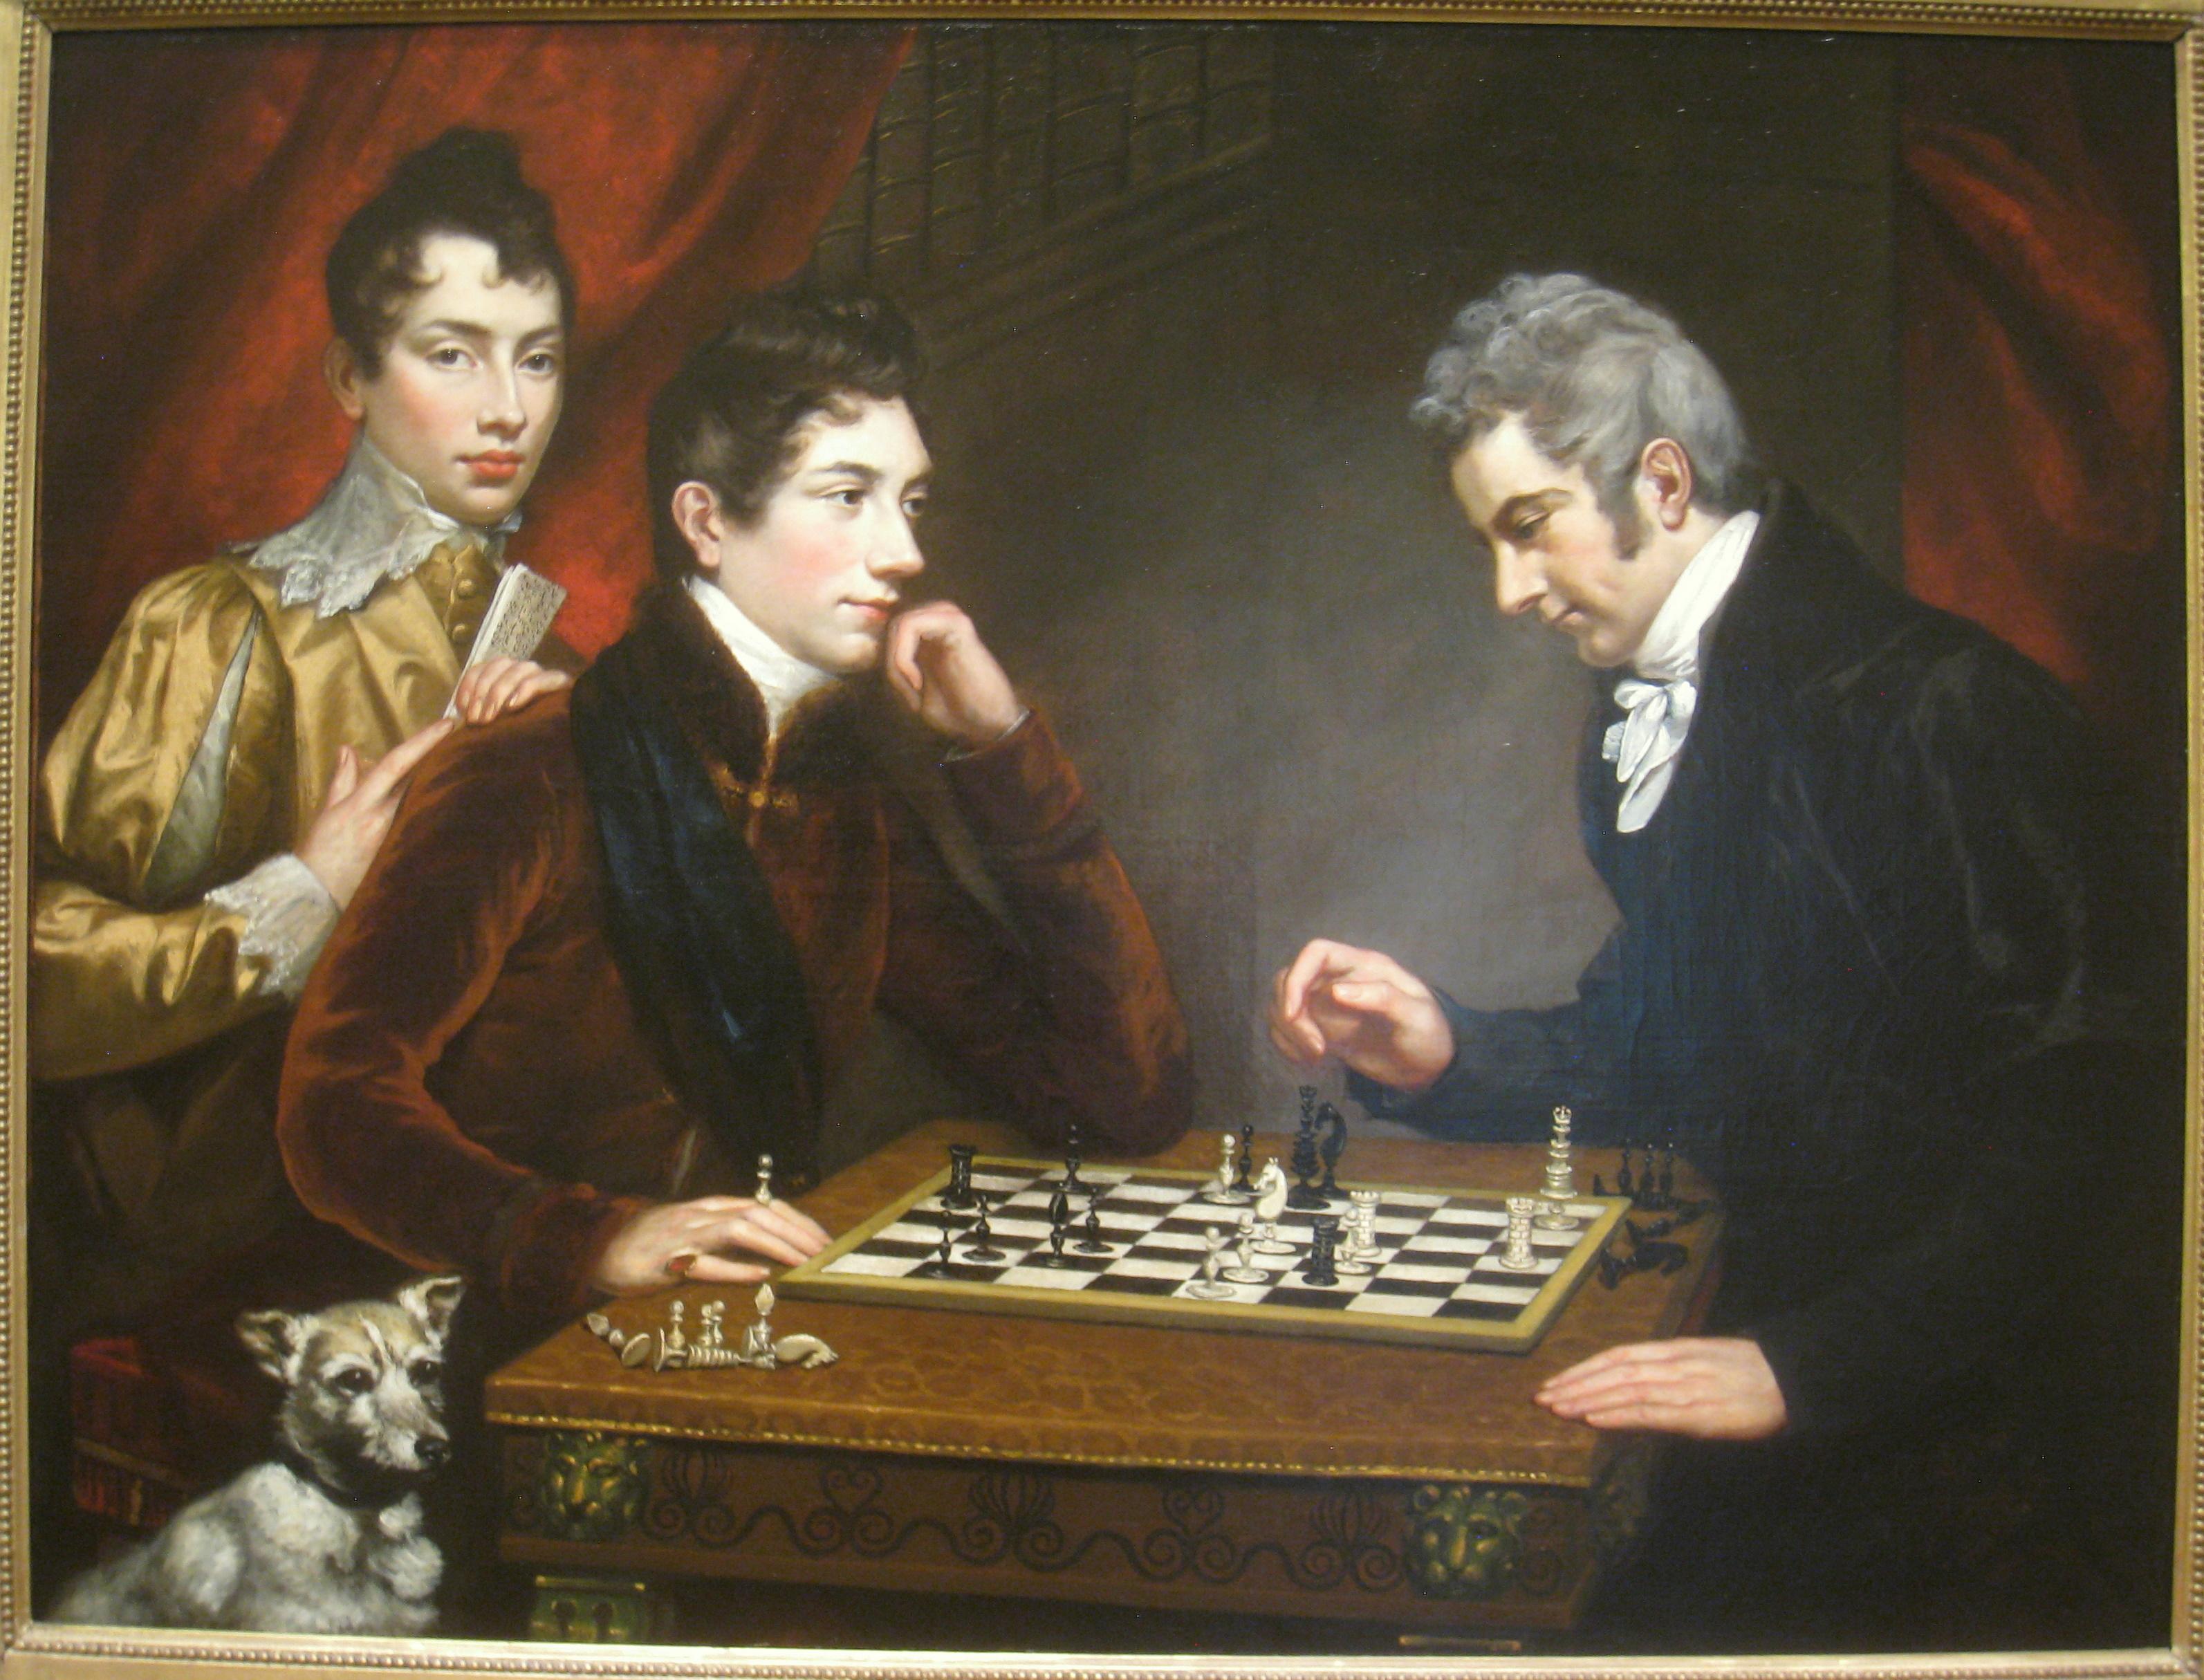 Princípios Básicos do Xadrez 